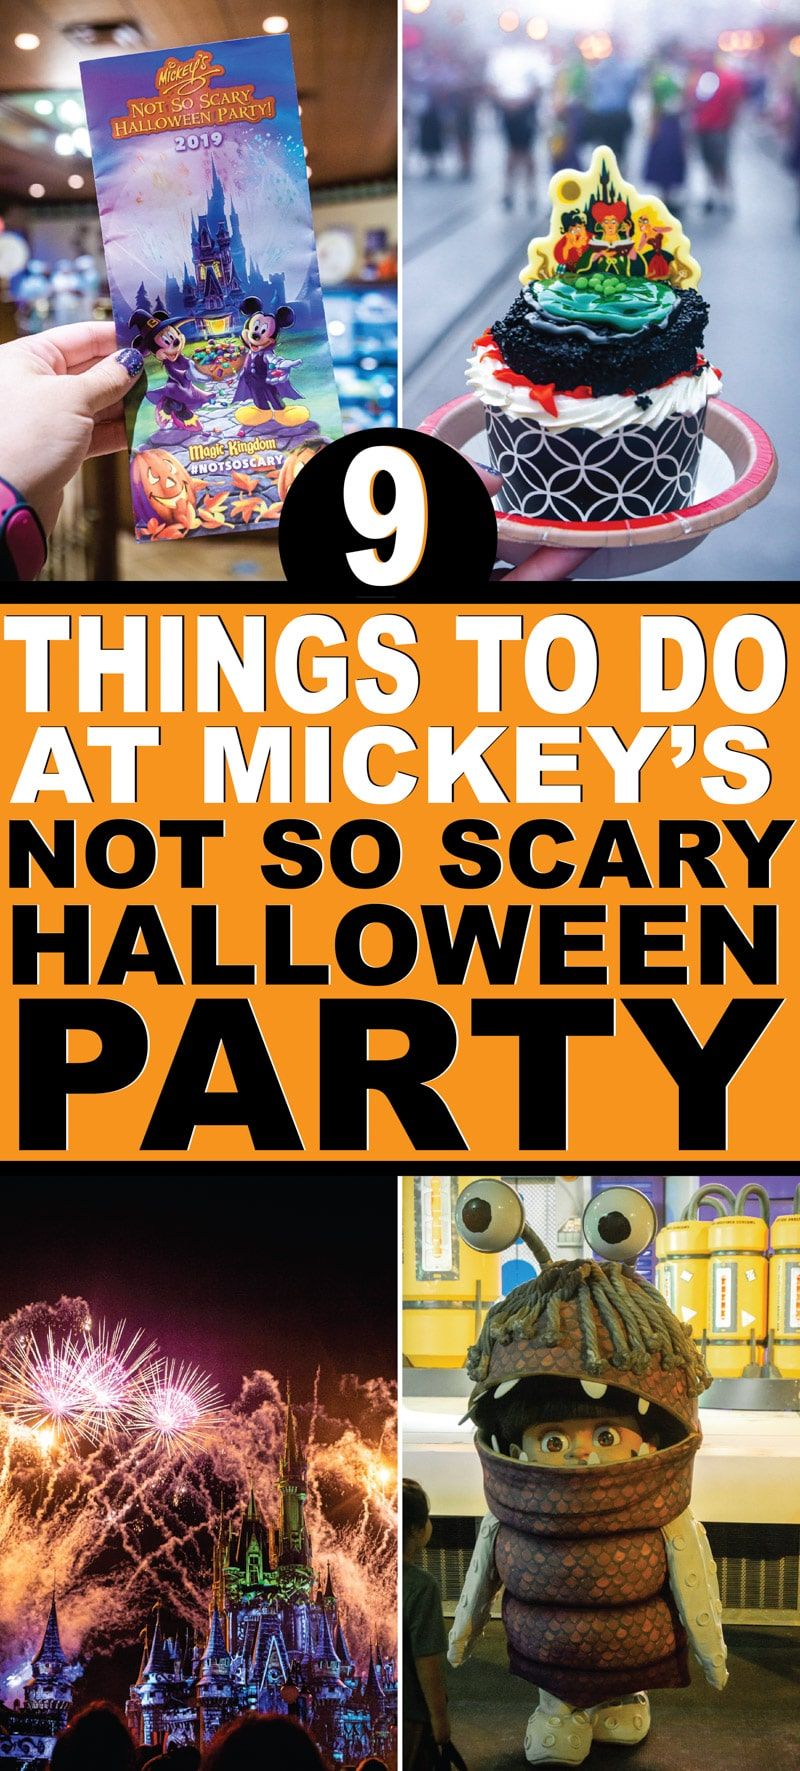 Kompletny przewodnik po niezbyt przerażającej imprezie Halloweenowej Myszki Miki 2019 w Disney World! Wszystko od zasady na temat kostiumów, które jedzenie i desery są najlepsze, z kim możesz robić zdjęcia i oczywiście kostiumy i koszule DIY, które możesz zrobić na imprezę! I nie zapomnij o wszystkich wskazówkach, jak zobaczyć najwięcej postaci i zdobyć jak najwięcej cukierków!